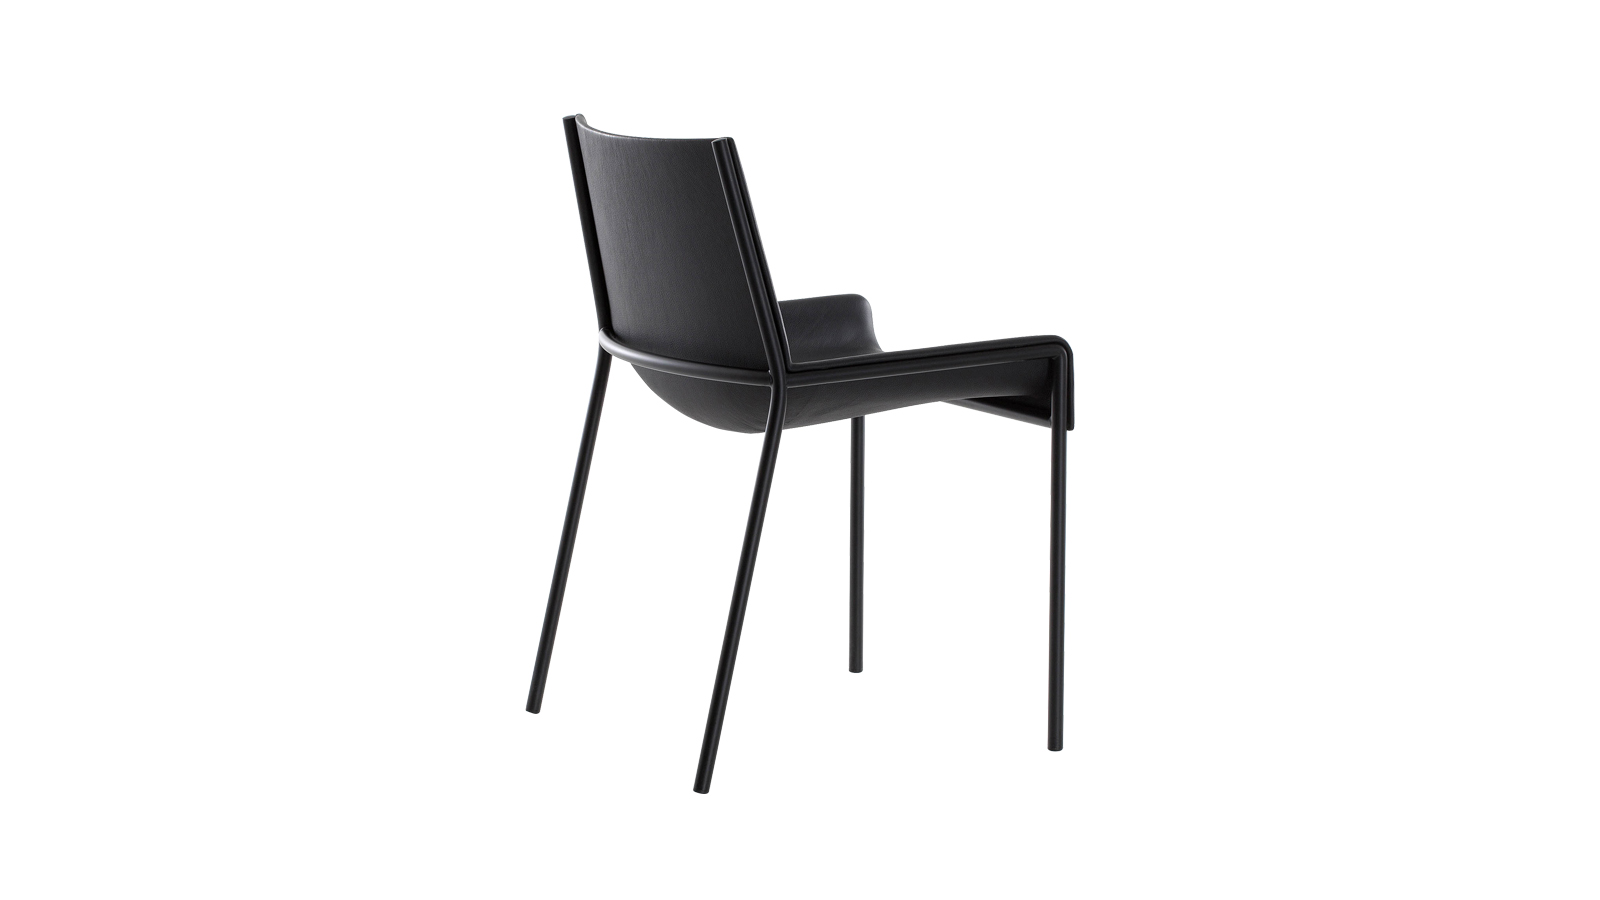 A H.Chair egy rendkívül kényelmes, a testet hátulról szinte körbeölelő szék, melyet Christophe Pillet tervezett a Porro számára. Szerkezete vékony, krómozott fémcsőből áll, mely műanyag ülőfelületet tart. A felület enyhén kiemelkedő kartámlái elsősorban a stabil ülést szolgálják, de felállás során is jó szolgálatot tesznek.